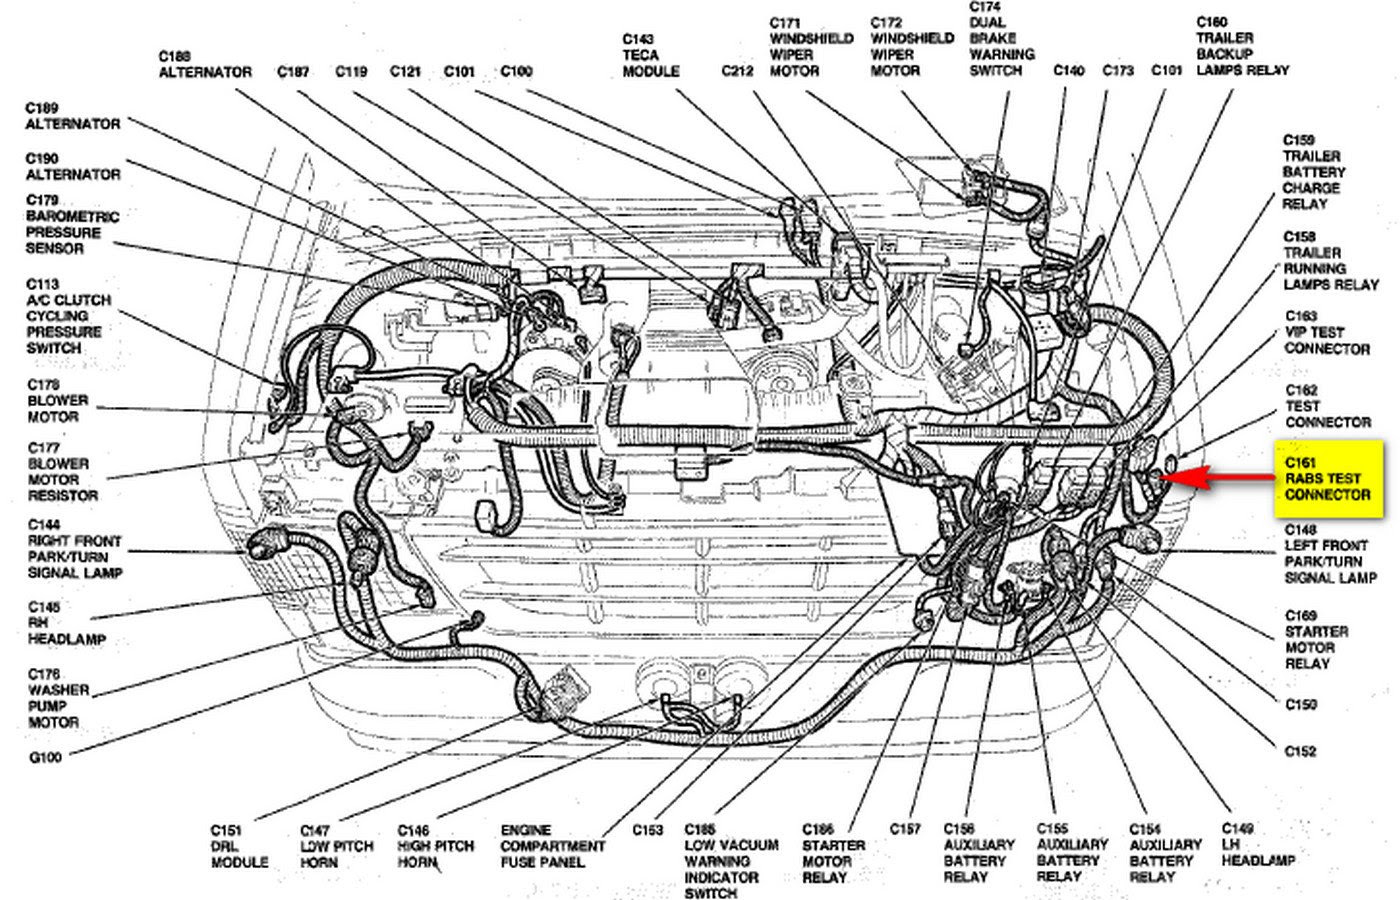 1988 Ford F 150 Engine Diagram - 88 Wiring Diagram